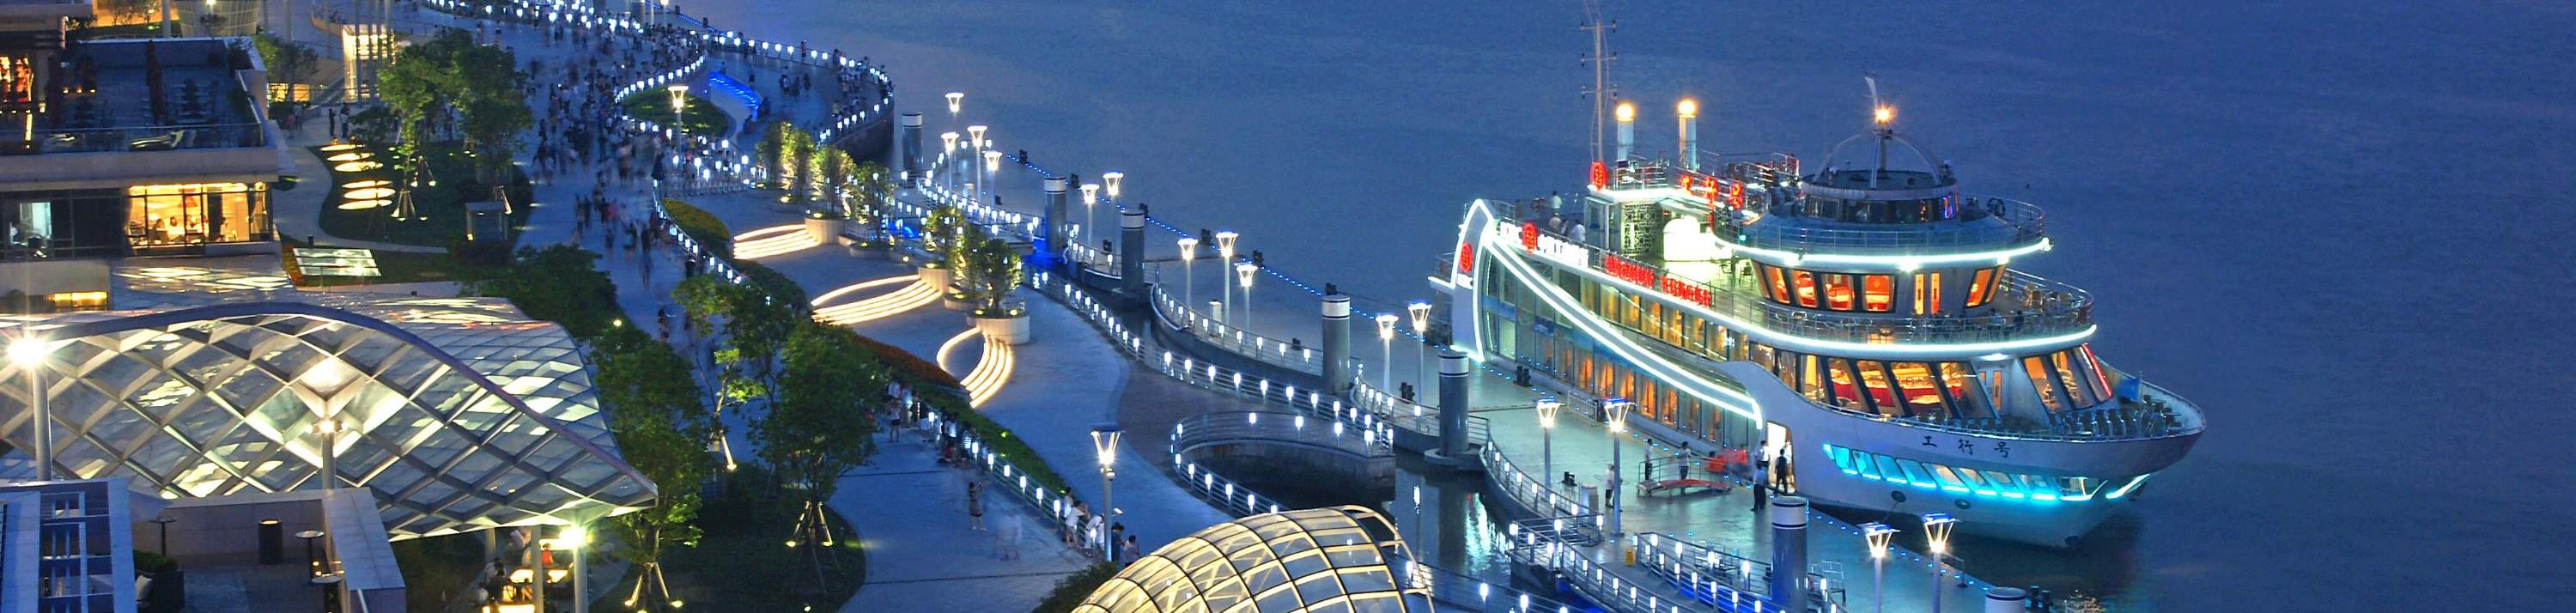 huangpu river cruise